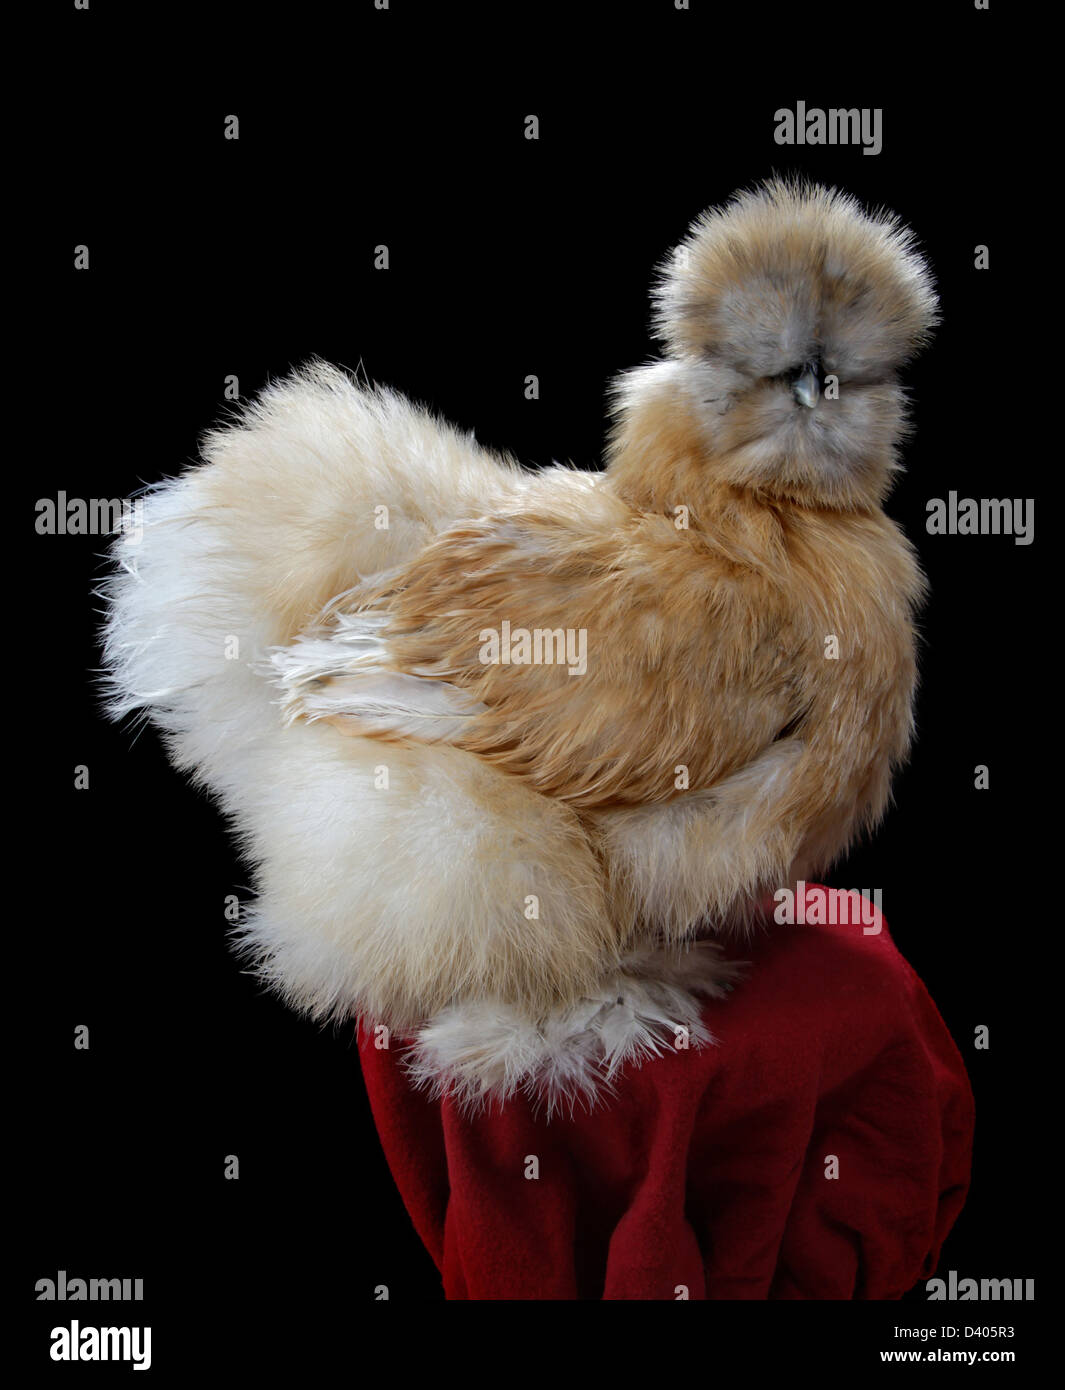 Un barbu en porcelaine silkie chicken (hen). Meilleur de variété dans le nord-est 2013 Congrès de la volaille à West Springfield, MA. Banque D'Images